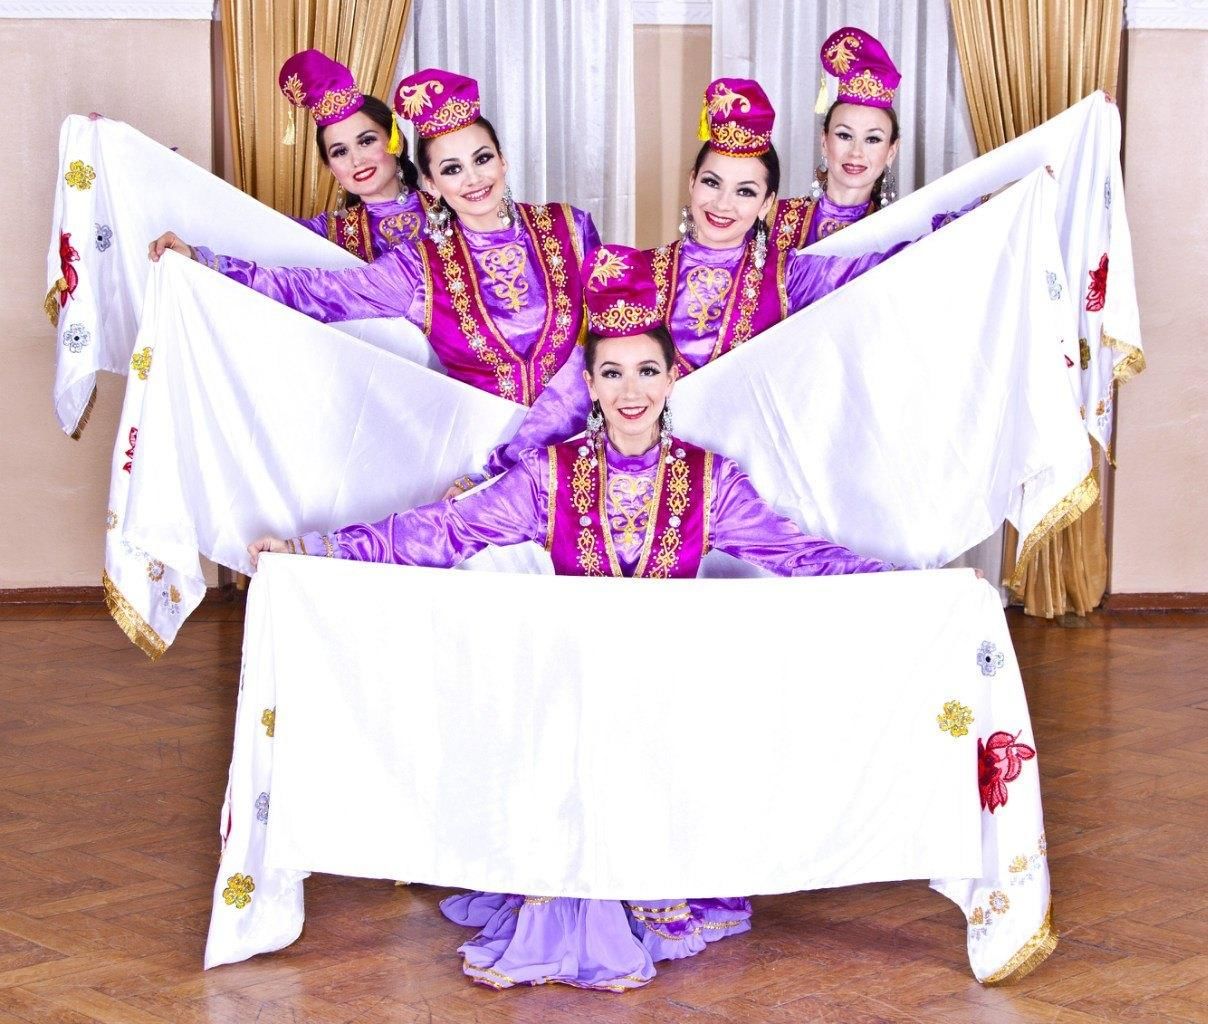 Татарская песня для танца